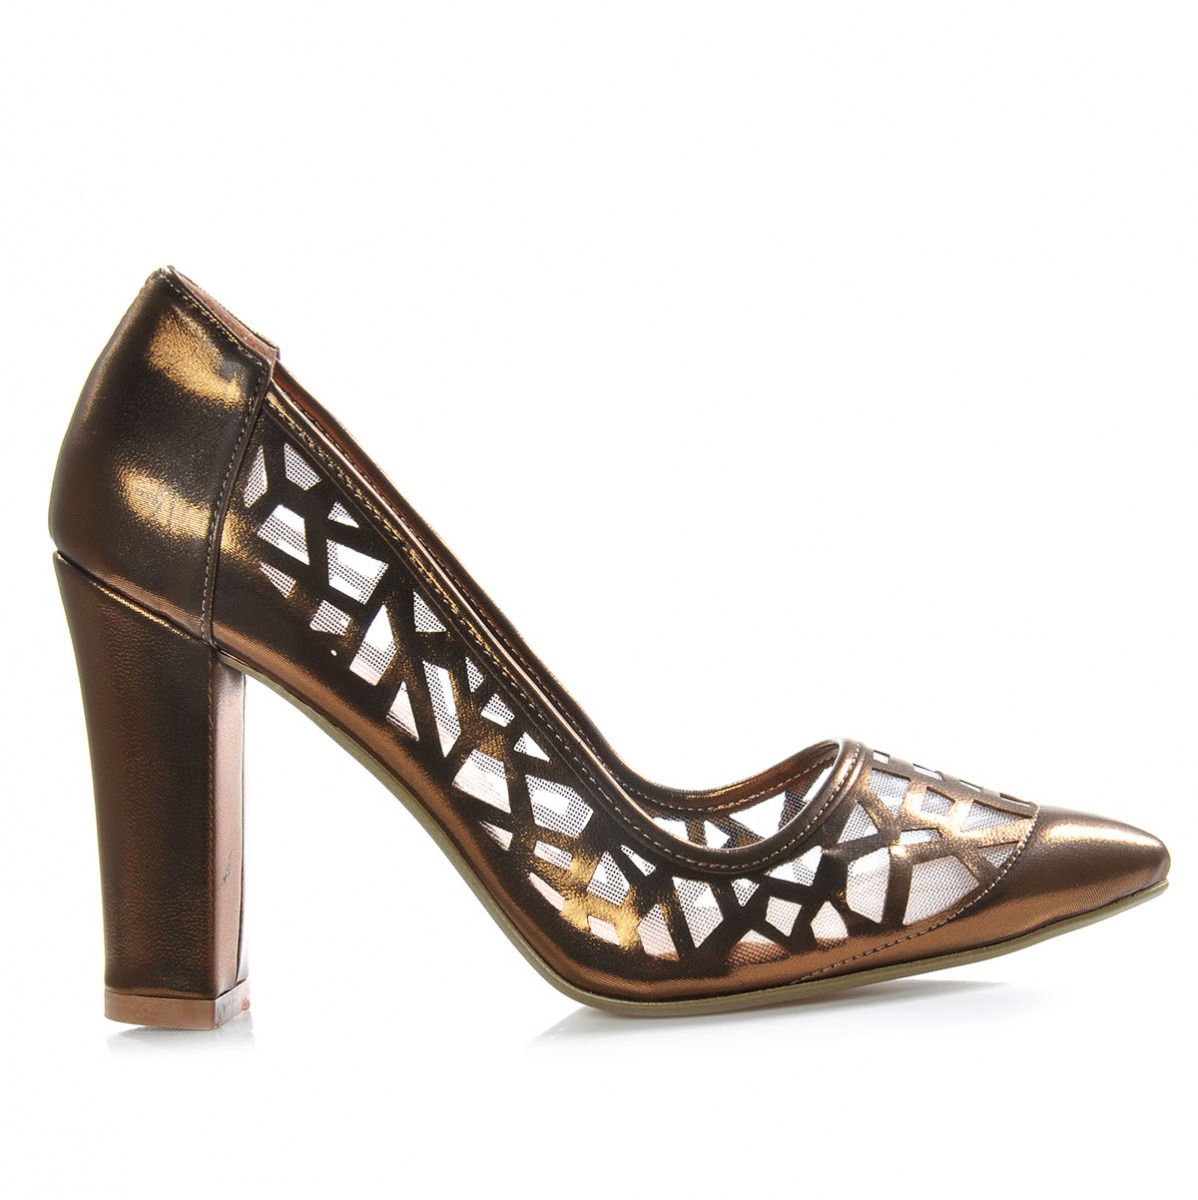 Flo Kadın  Bronz Klasik Topuklu Ayakkabı VZN-324Y. 1